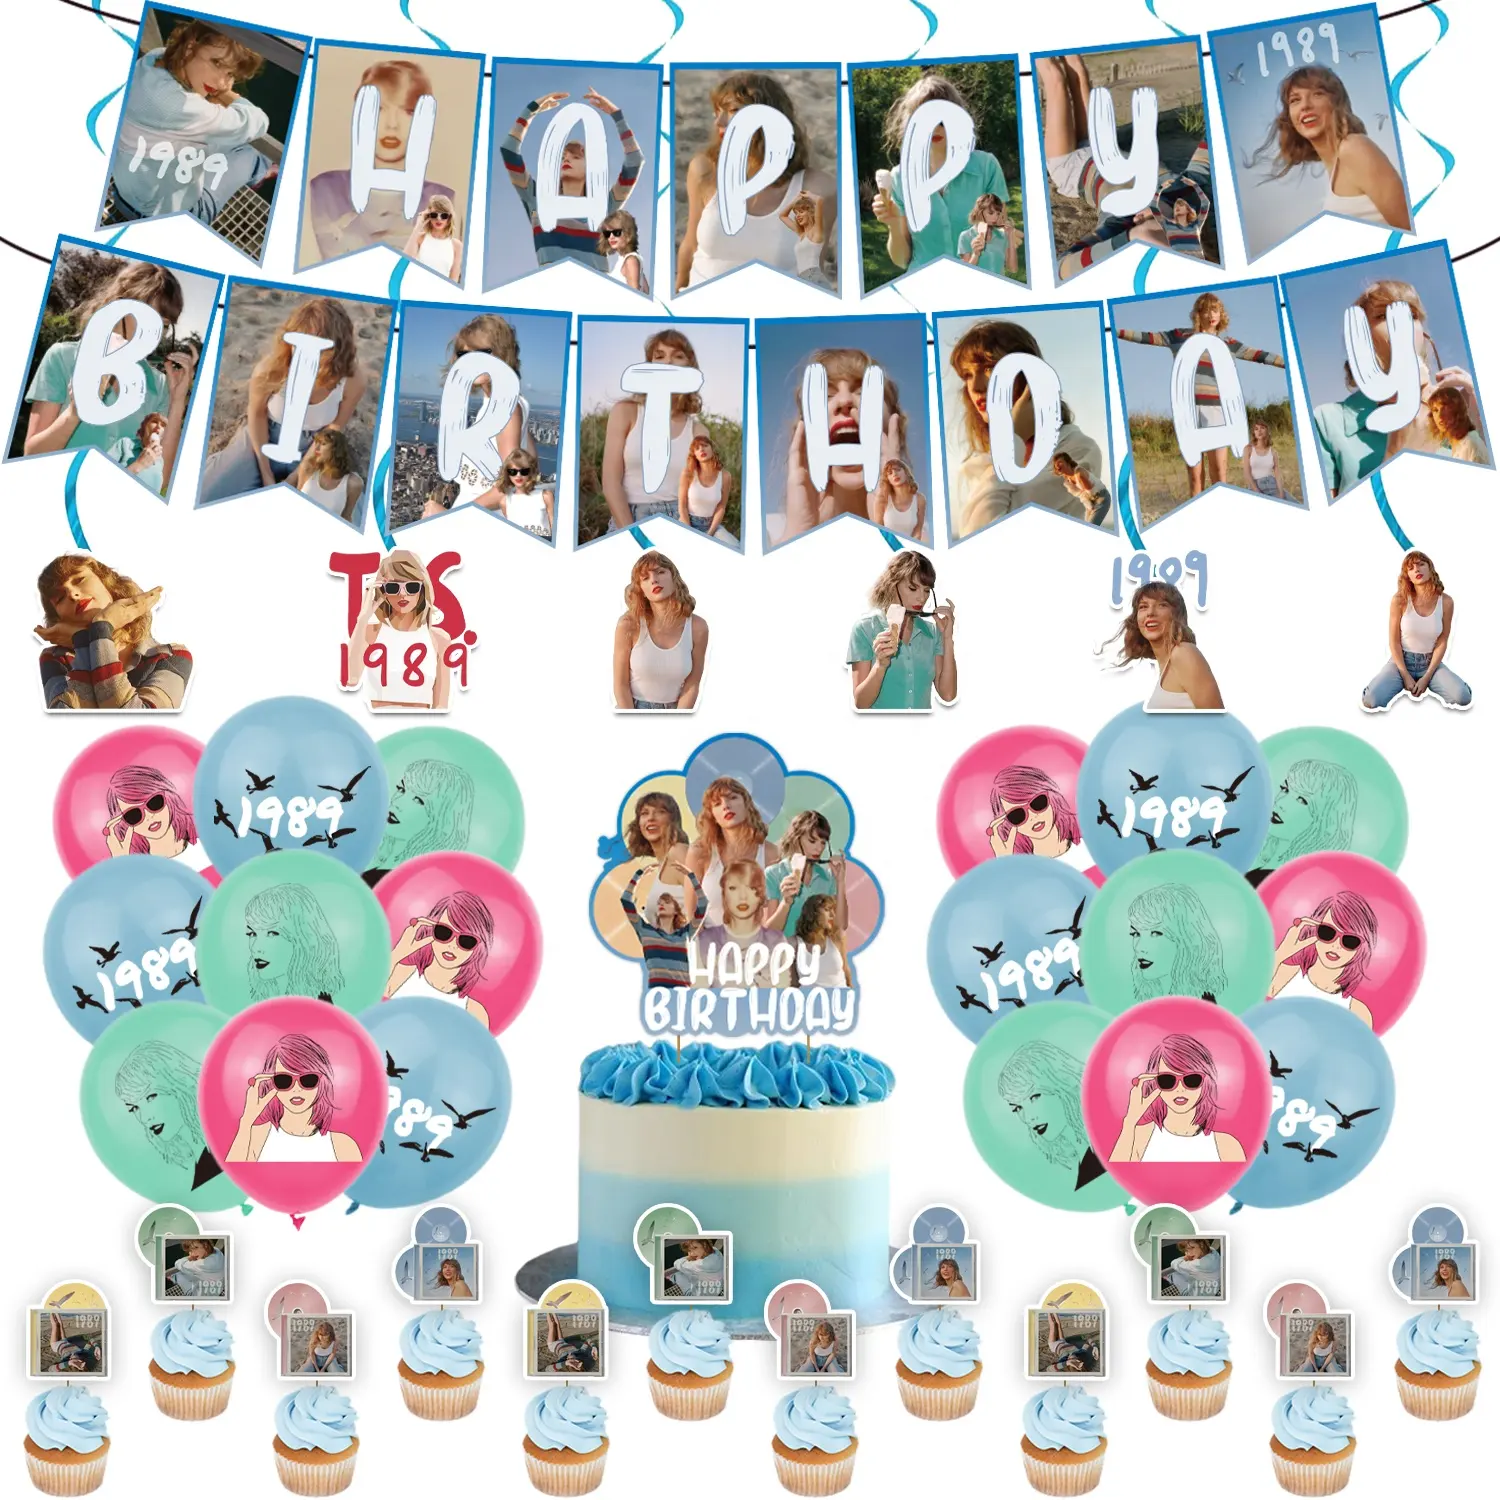 Taylor-Sw1ft yıldız doğum günü süper fanlar parti dekorasyon balonu afiş kek Topper şarkıcı parti malzemeleri bebek duş